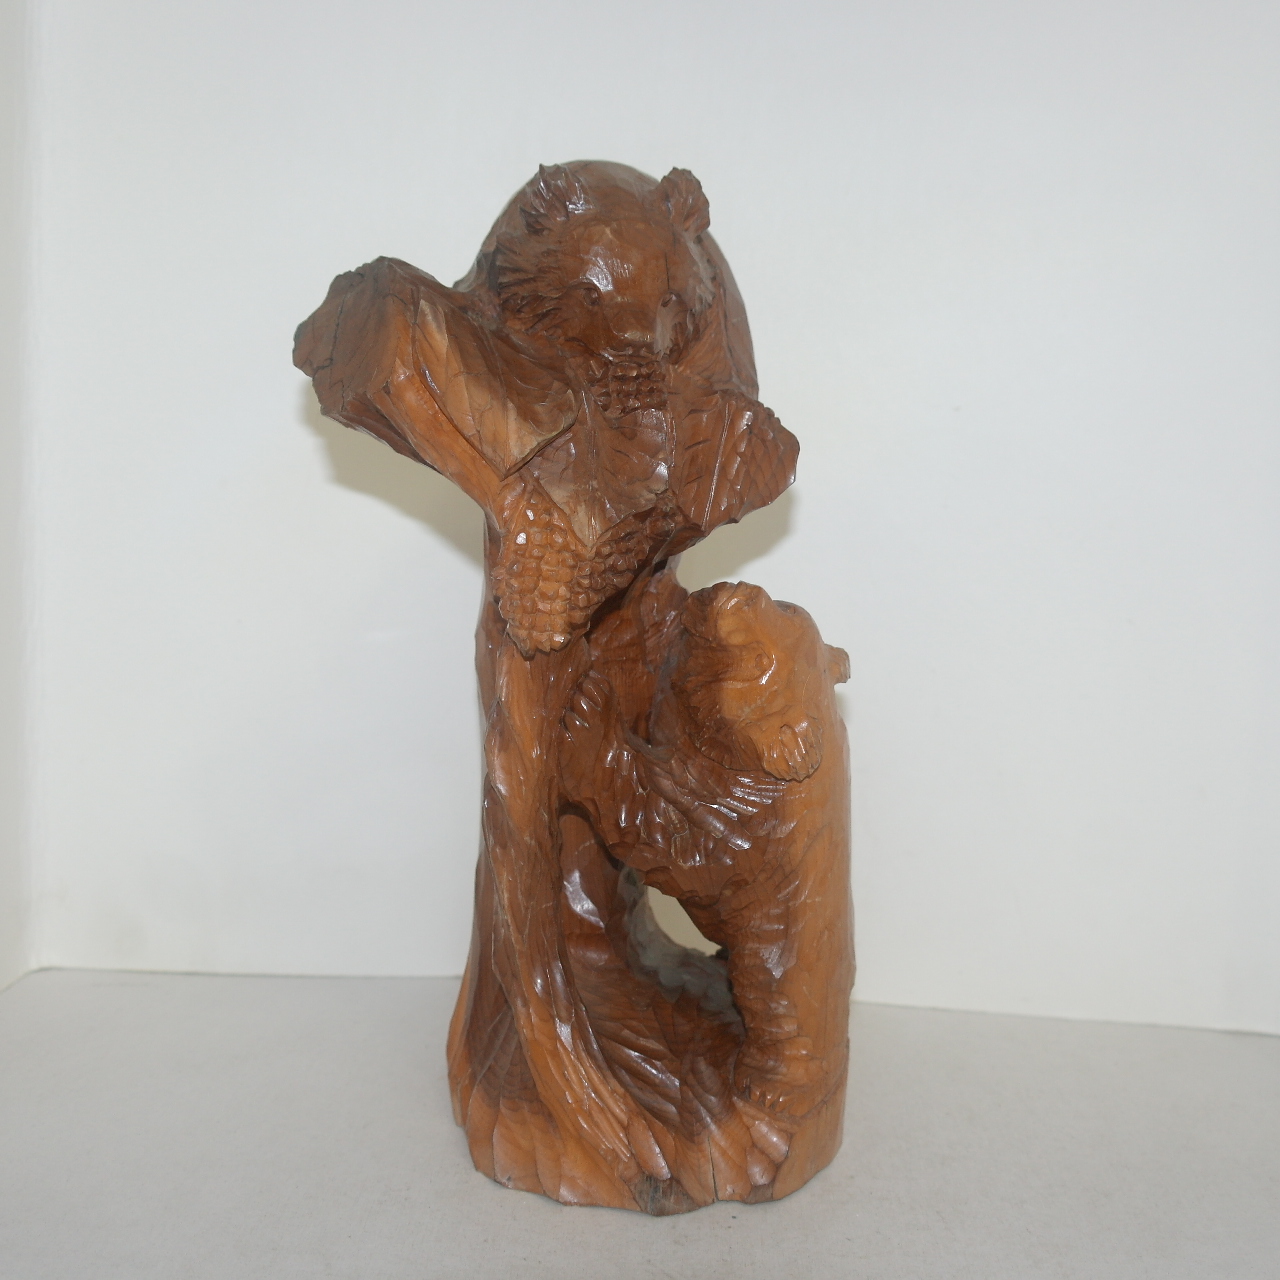 원목나무에 통으로 조각된 곰 조각상